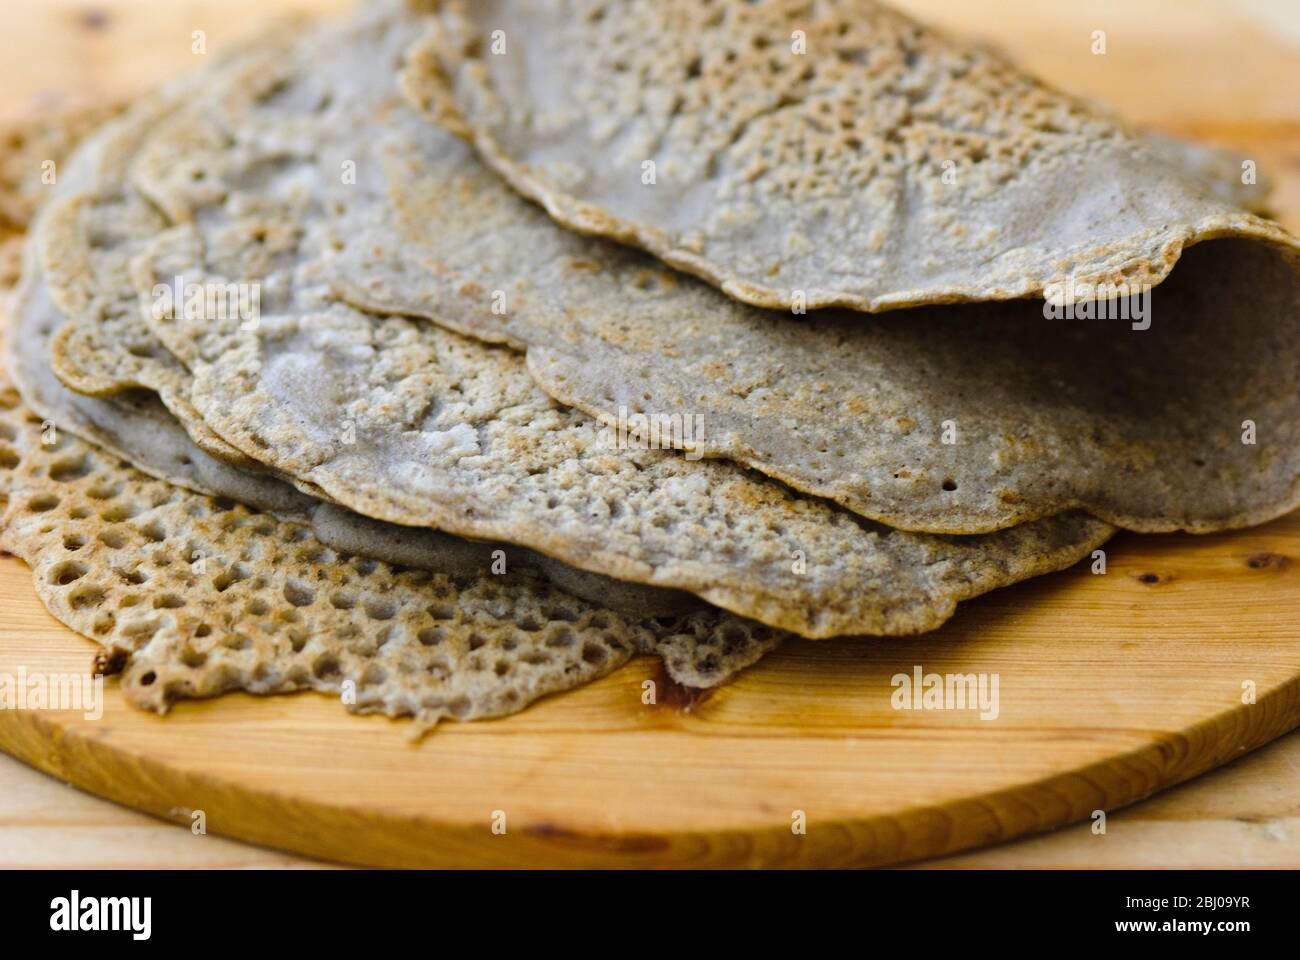 Brot-Wraps Buchweizenmehl, Salz, Olivenöl und Wasser gemacht. Gluten frei. Stockfoto